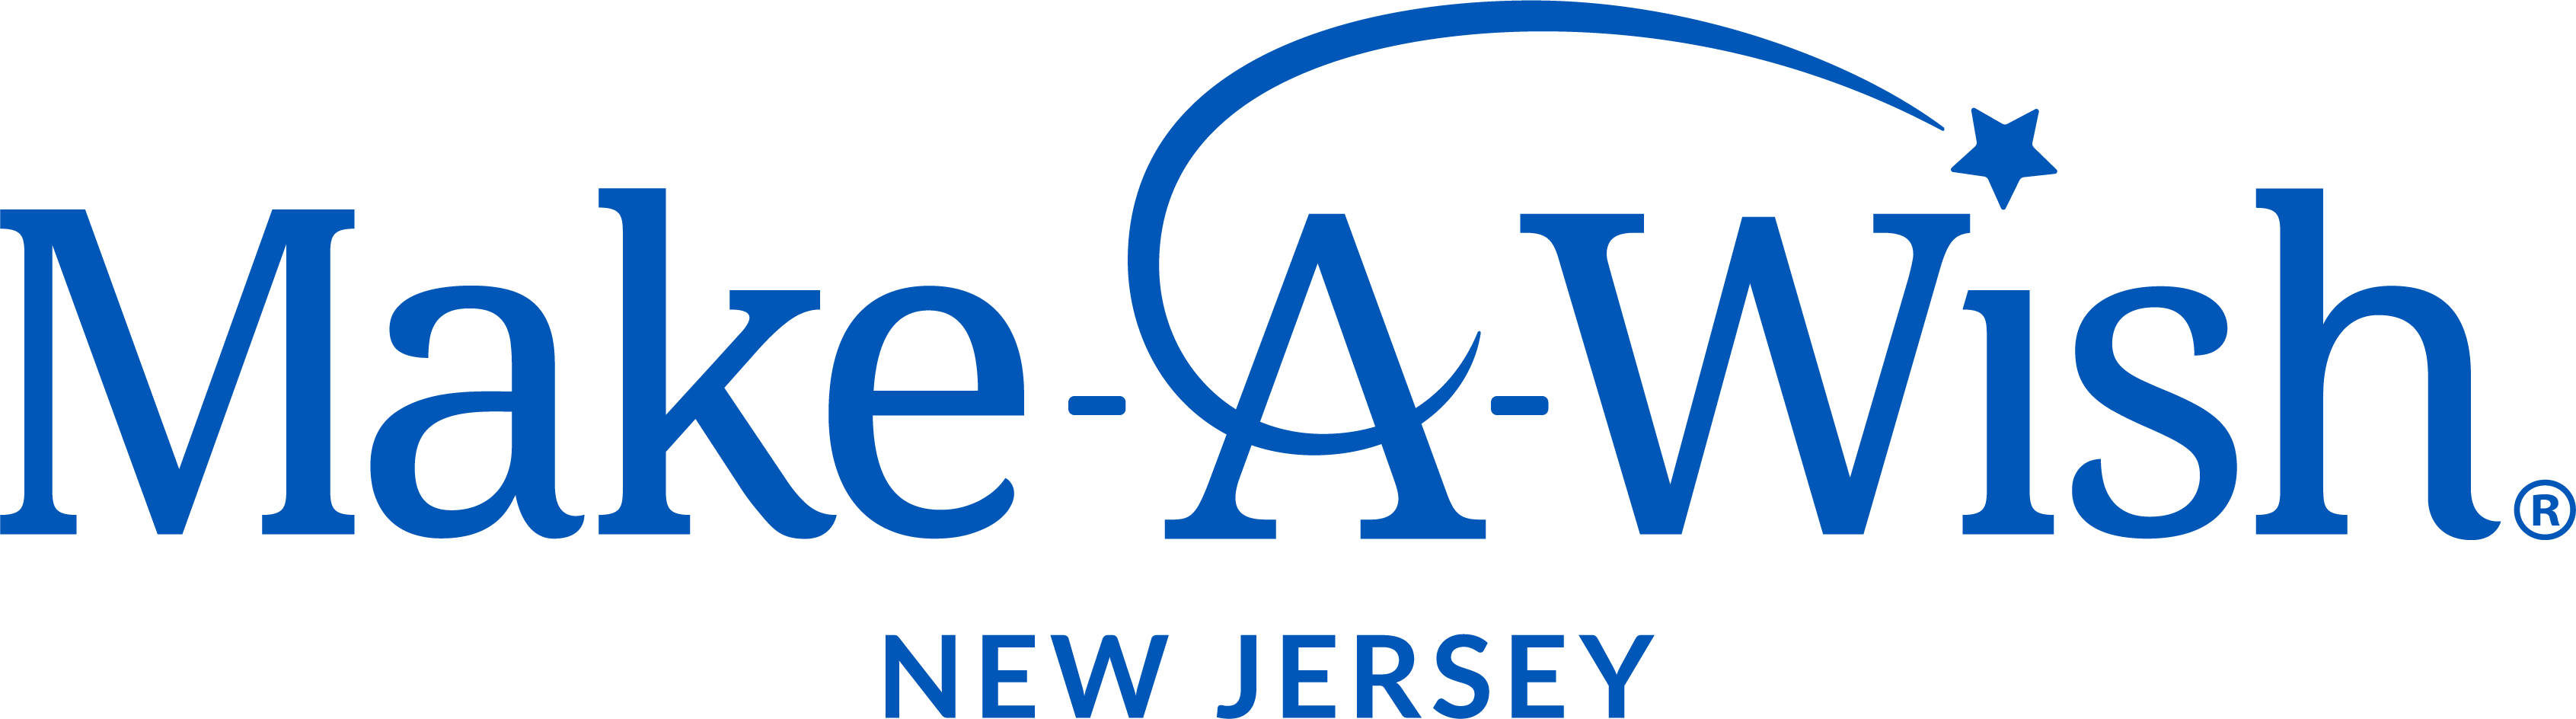 Make-A-Wish New Jersey logo